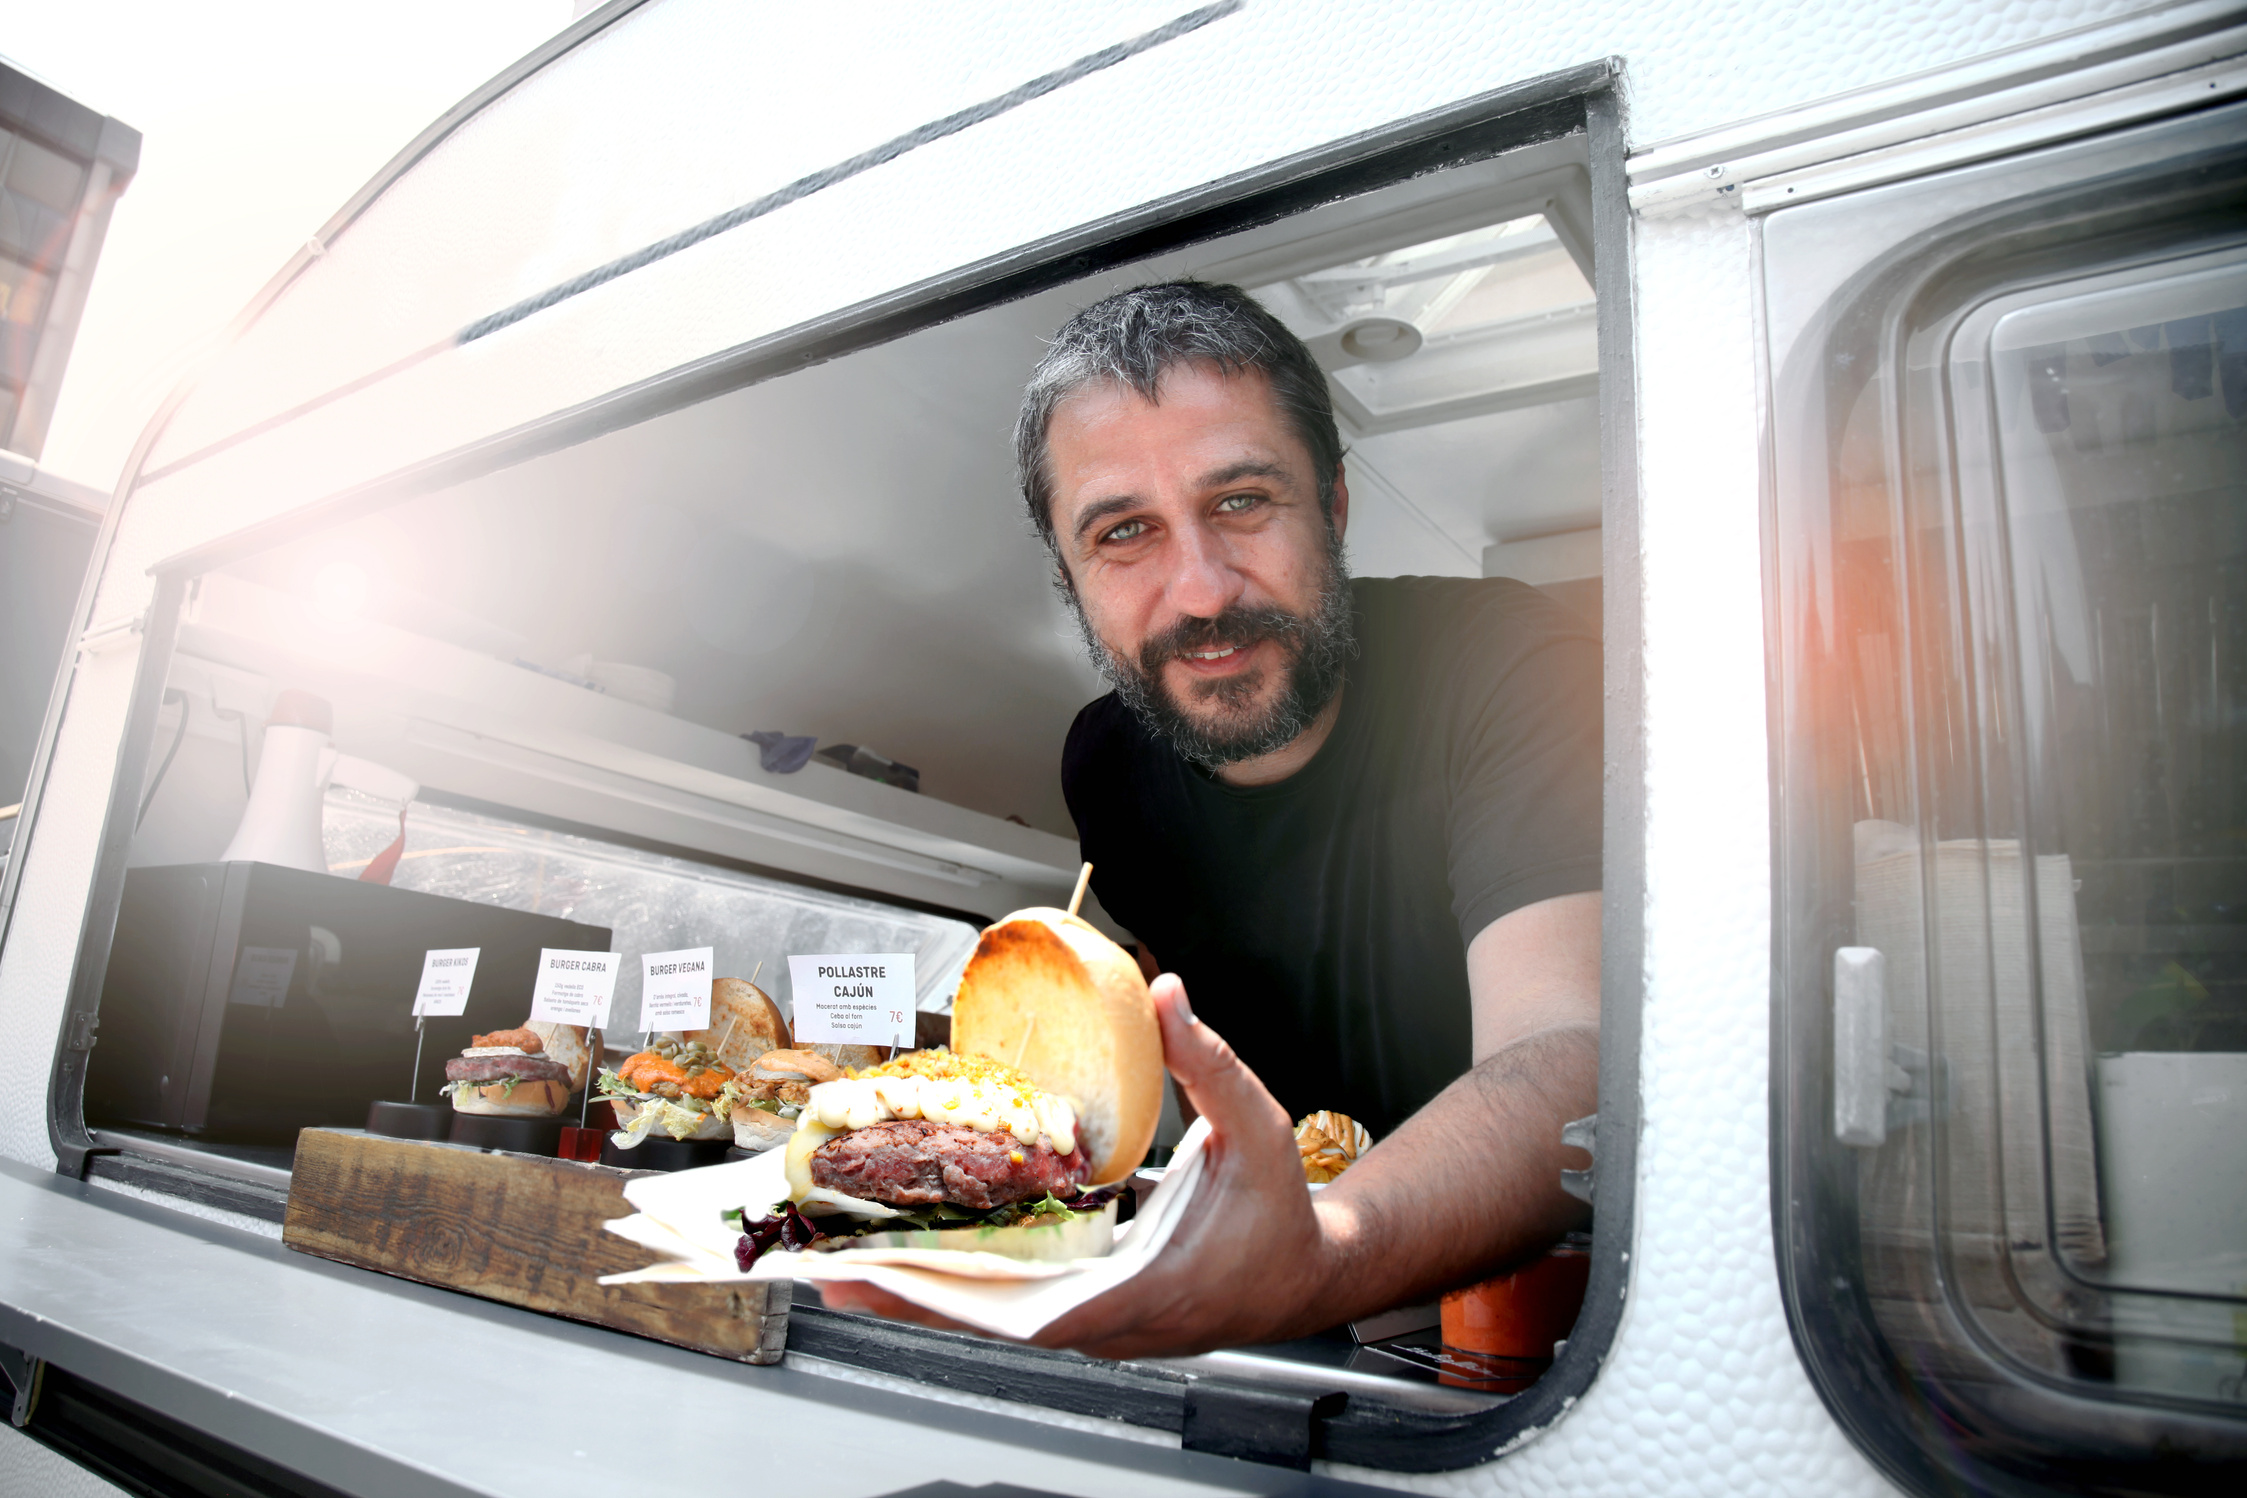 Food truck owner serving burger